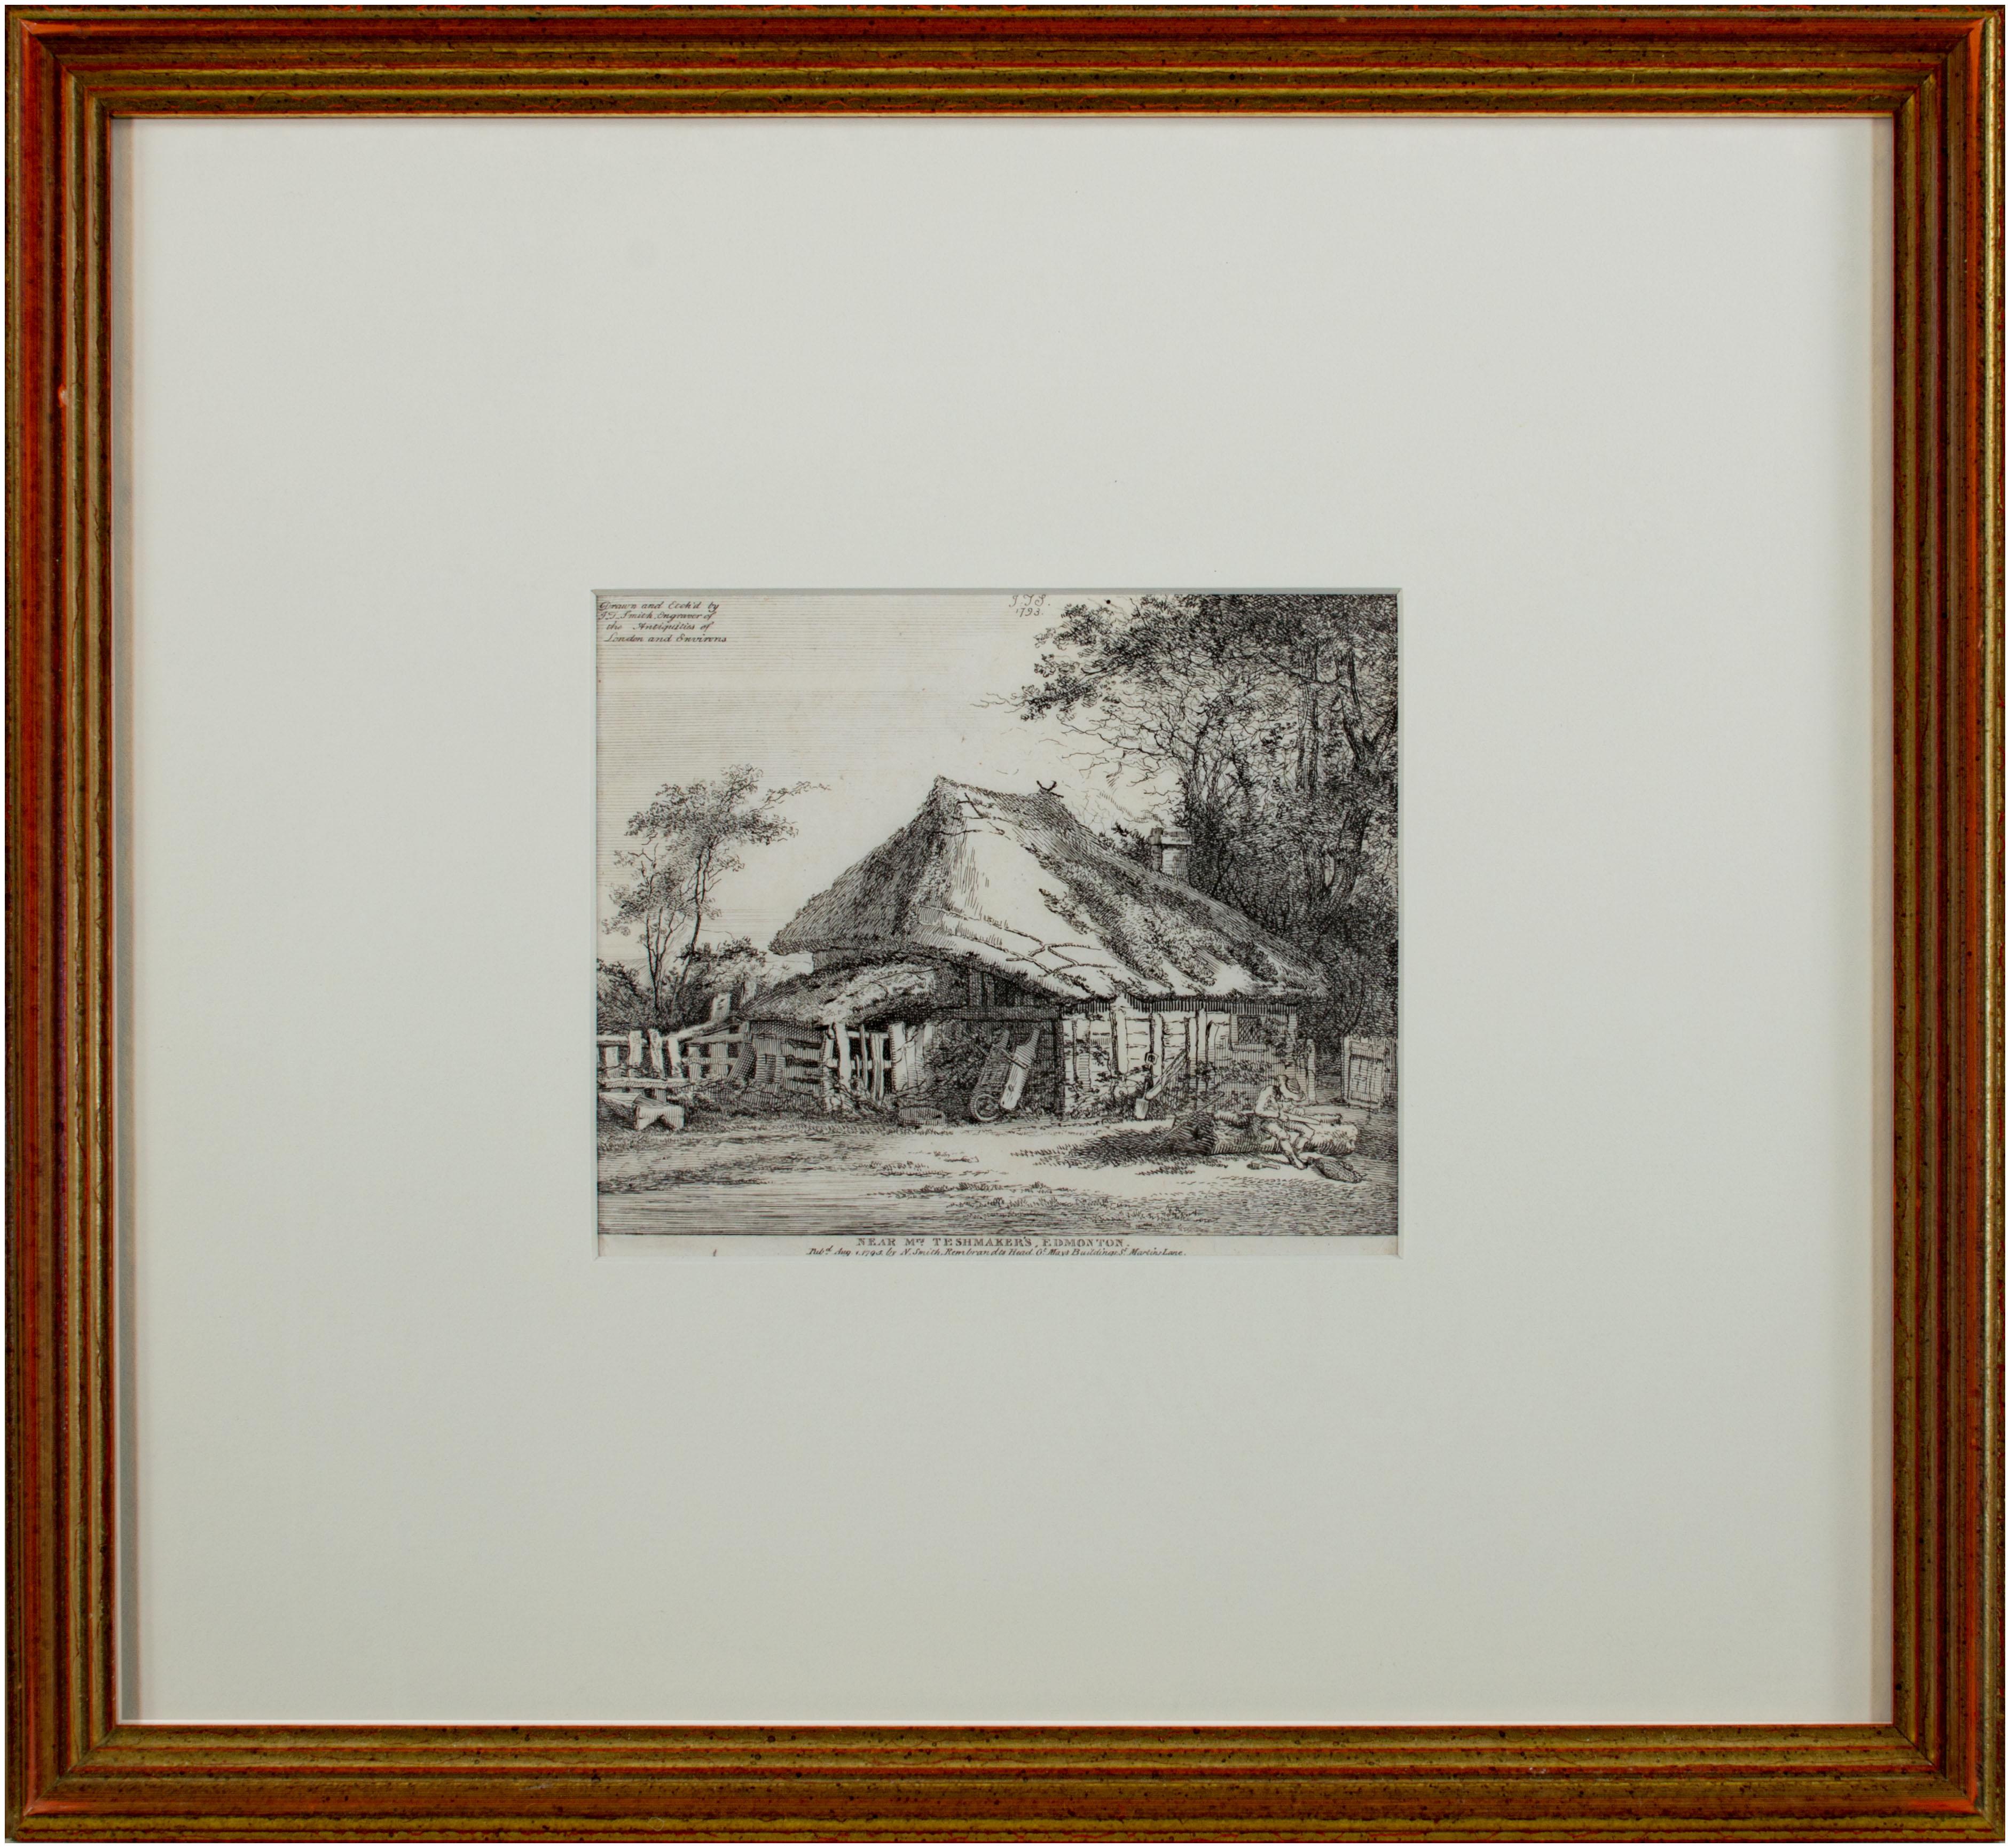 Das vorliegende Werk ist einer der vielen Drucke, die John Thomas Smith von englischen Cottages und traditioneller Architektur anfertigte. Dieses Beispiel, eine Ansicht eines Cottages in Edmonton, steht in engem Zusammenhang mit einer Serie von 20